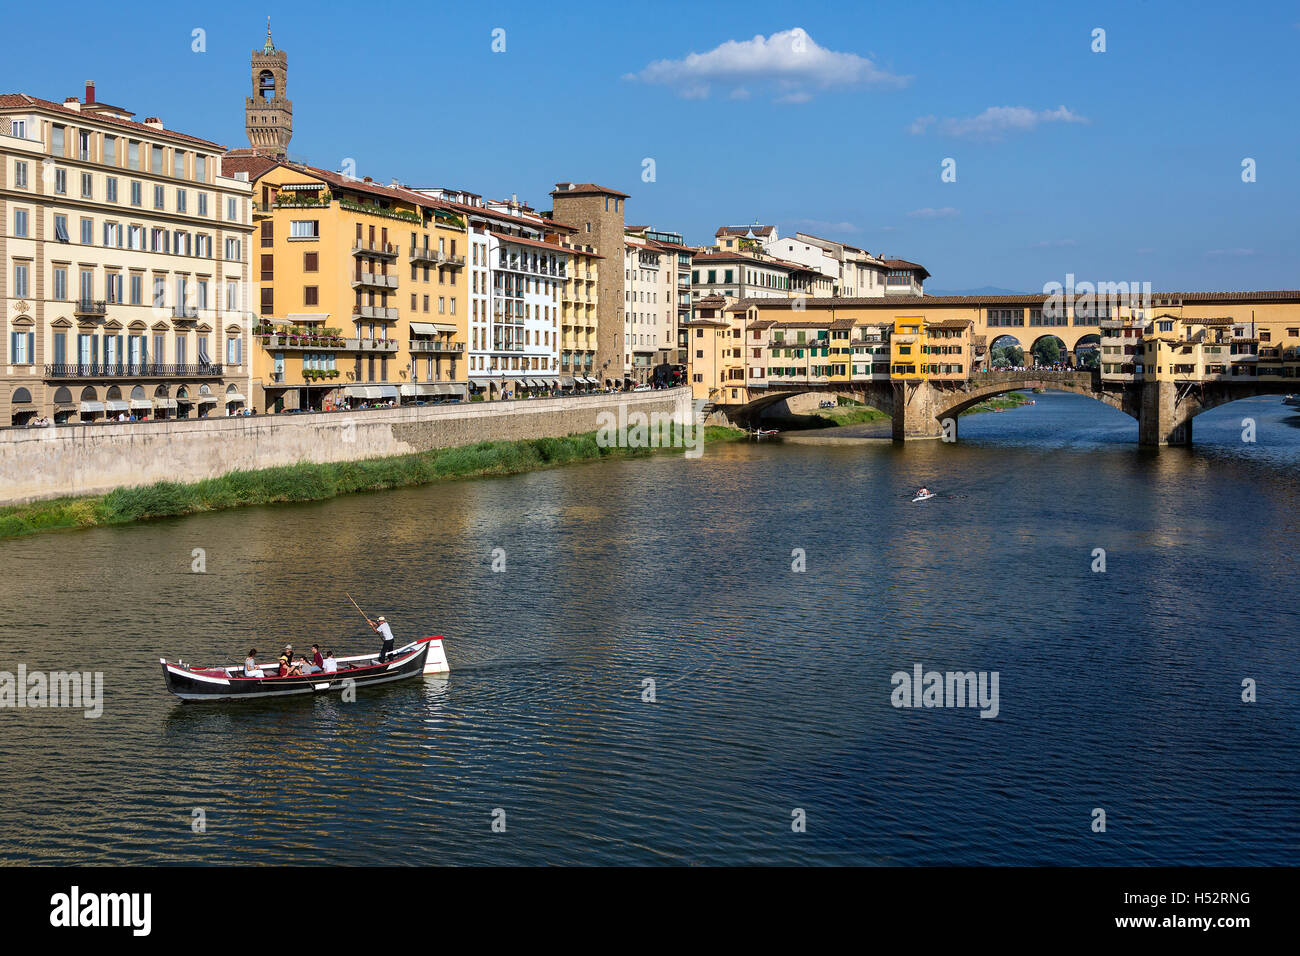 Florencia, Italia - El Ponte Vecchio (Puente Viejo] es un puente de piedra medieval sobre el río Arno. Foto de stock